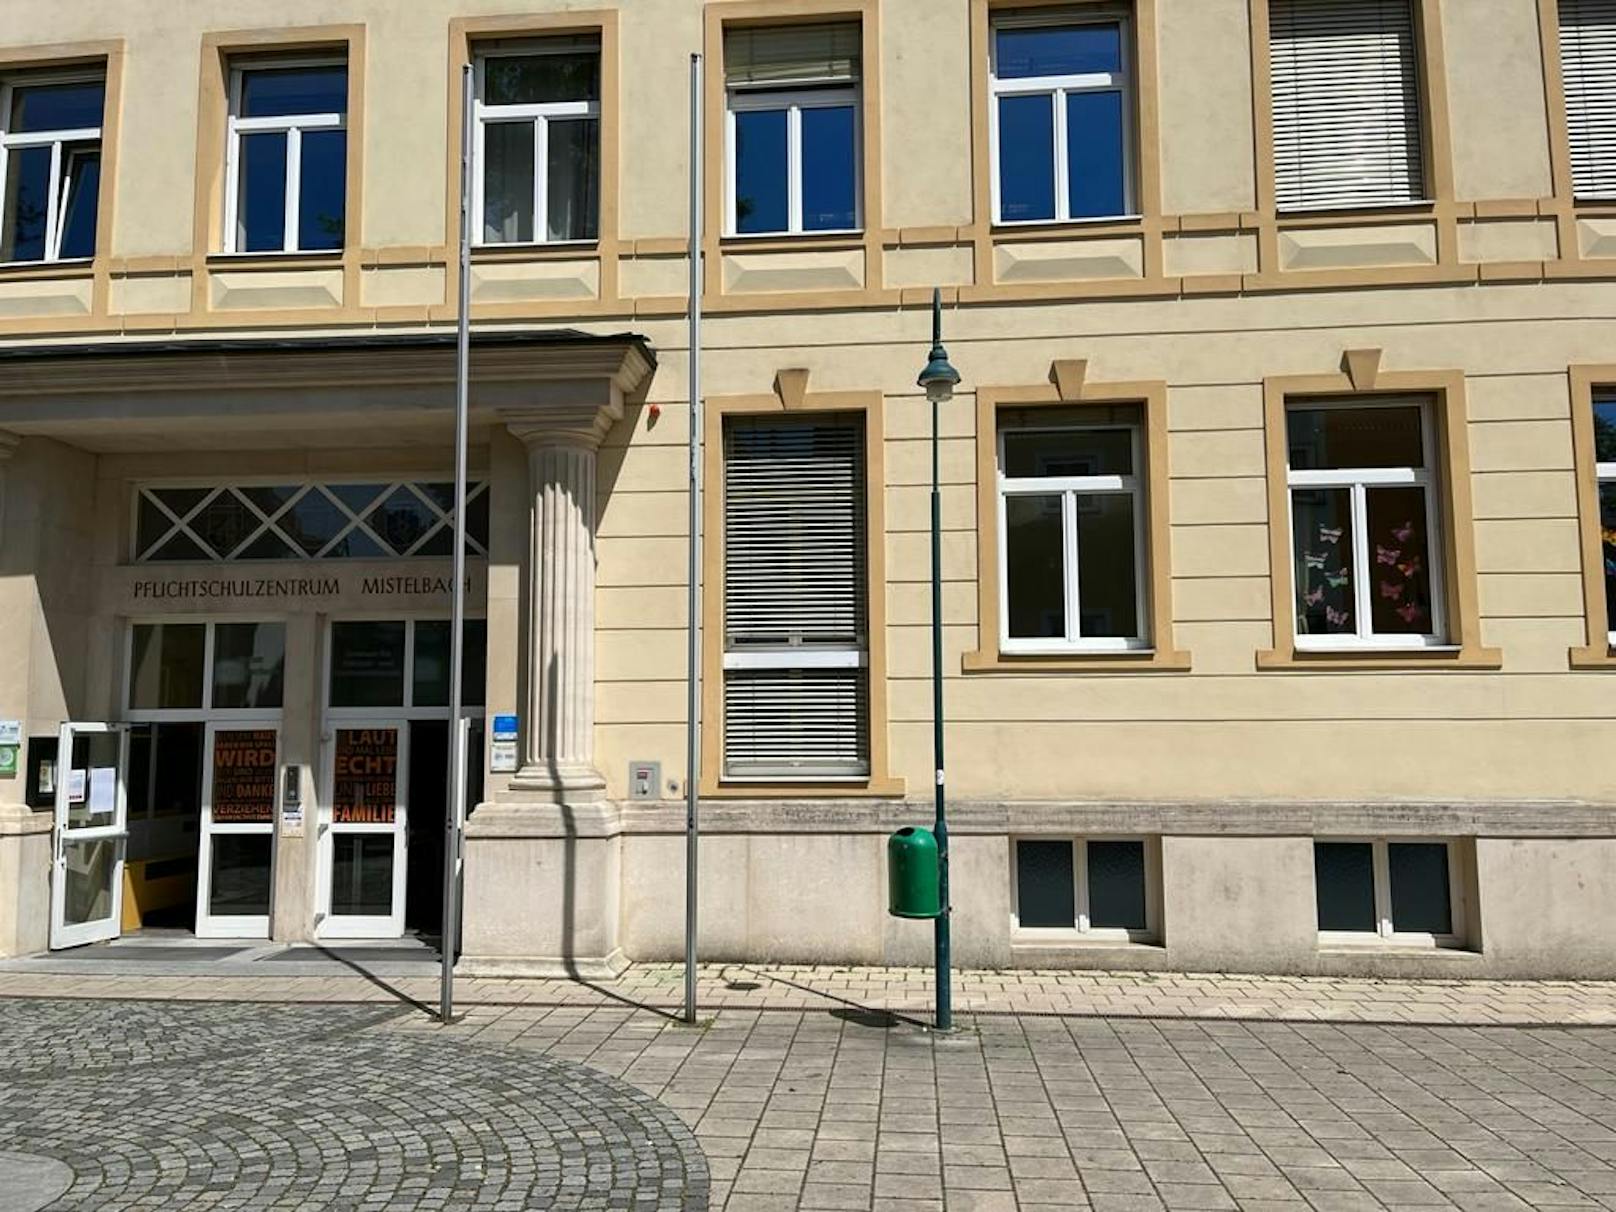 Im Pflichtschulzentrum Mistelbach war ein Amoklauf angekündigt worden